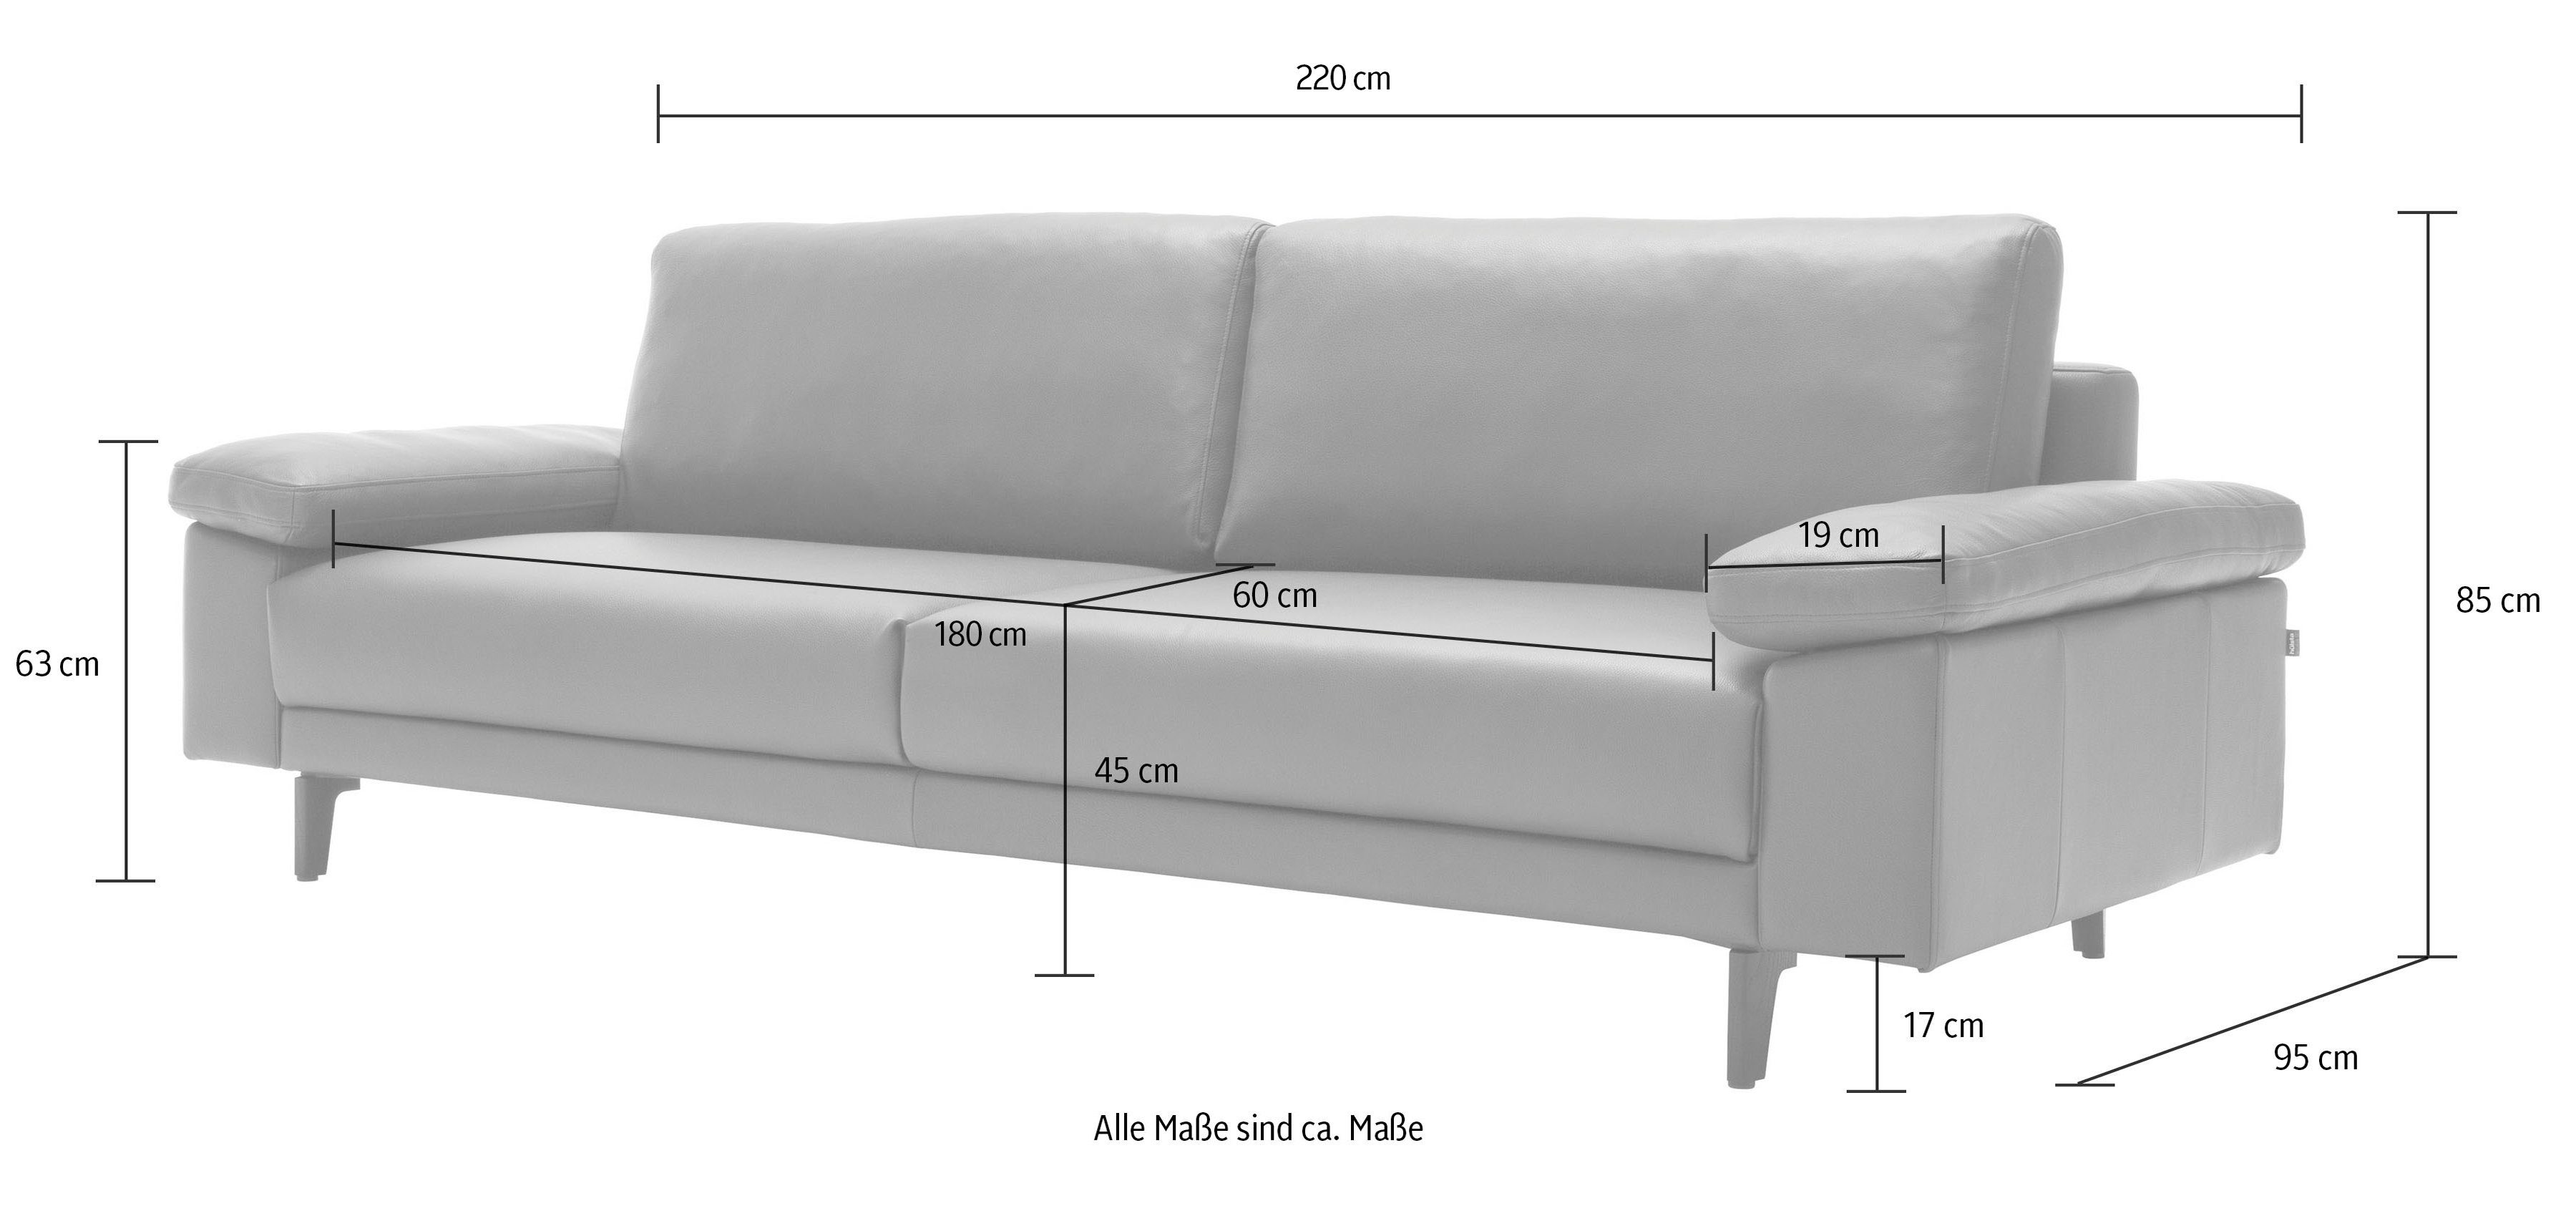 hs.450 sofa 3-Sitzer hülsta